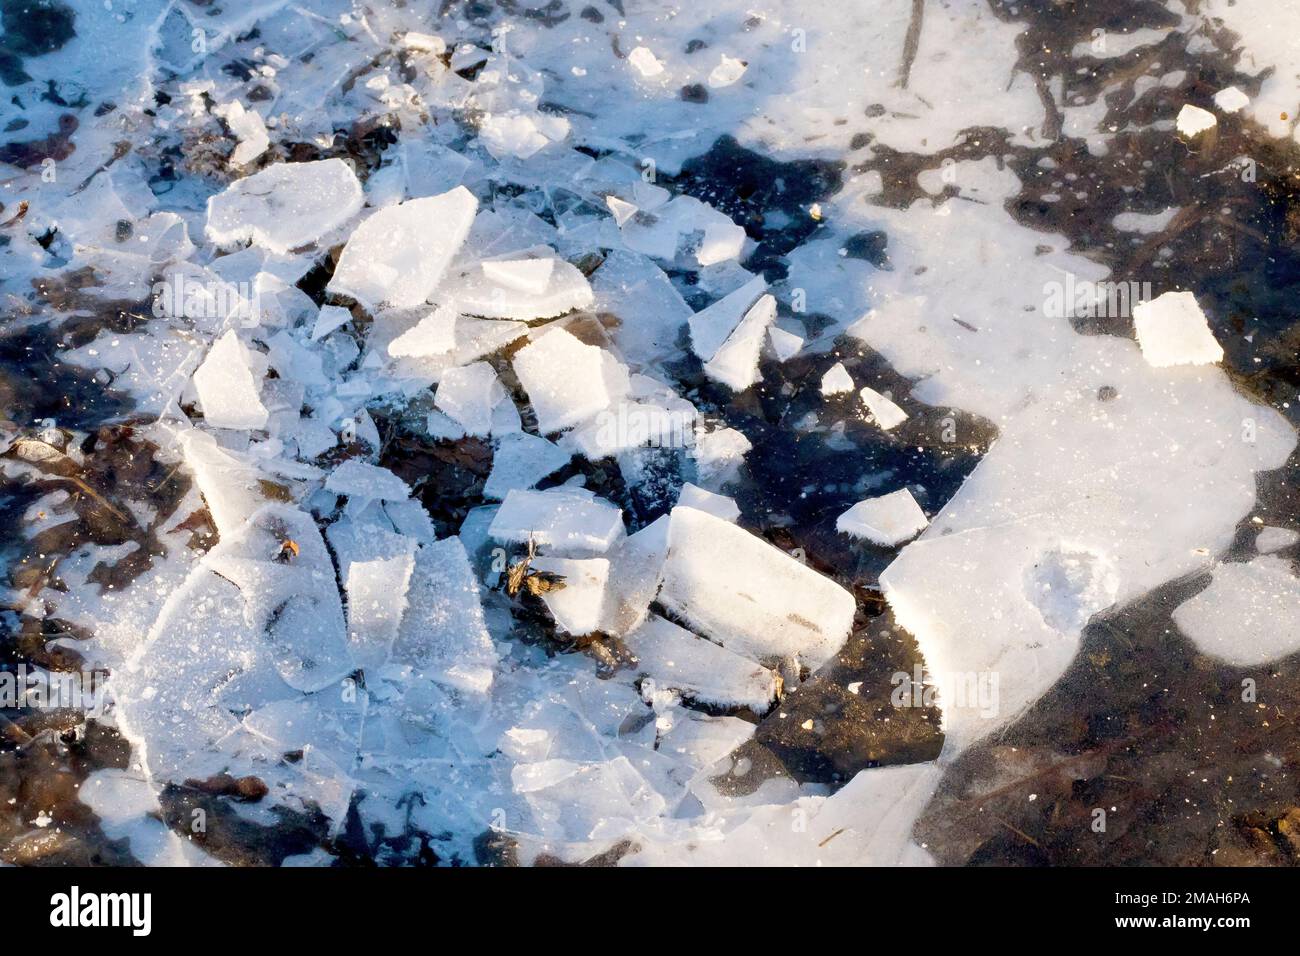 Primo piano di una grande pozzanghera ricoperta di ghiaccio, parte della quale è stata abbattuta in piccoli pezzi di ghiaccio e lasciata sciogliere al sole. Foto Stock